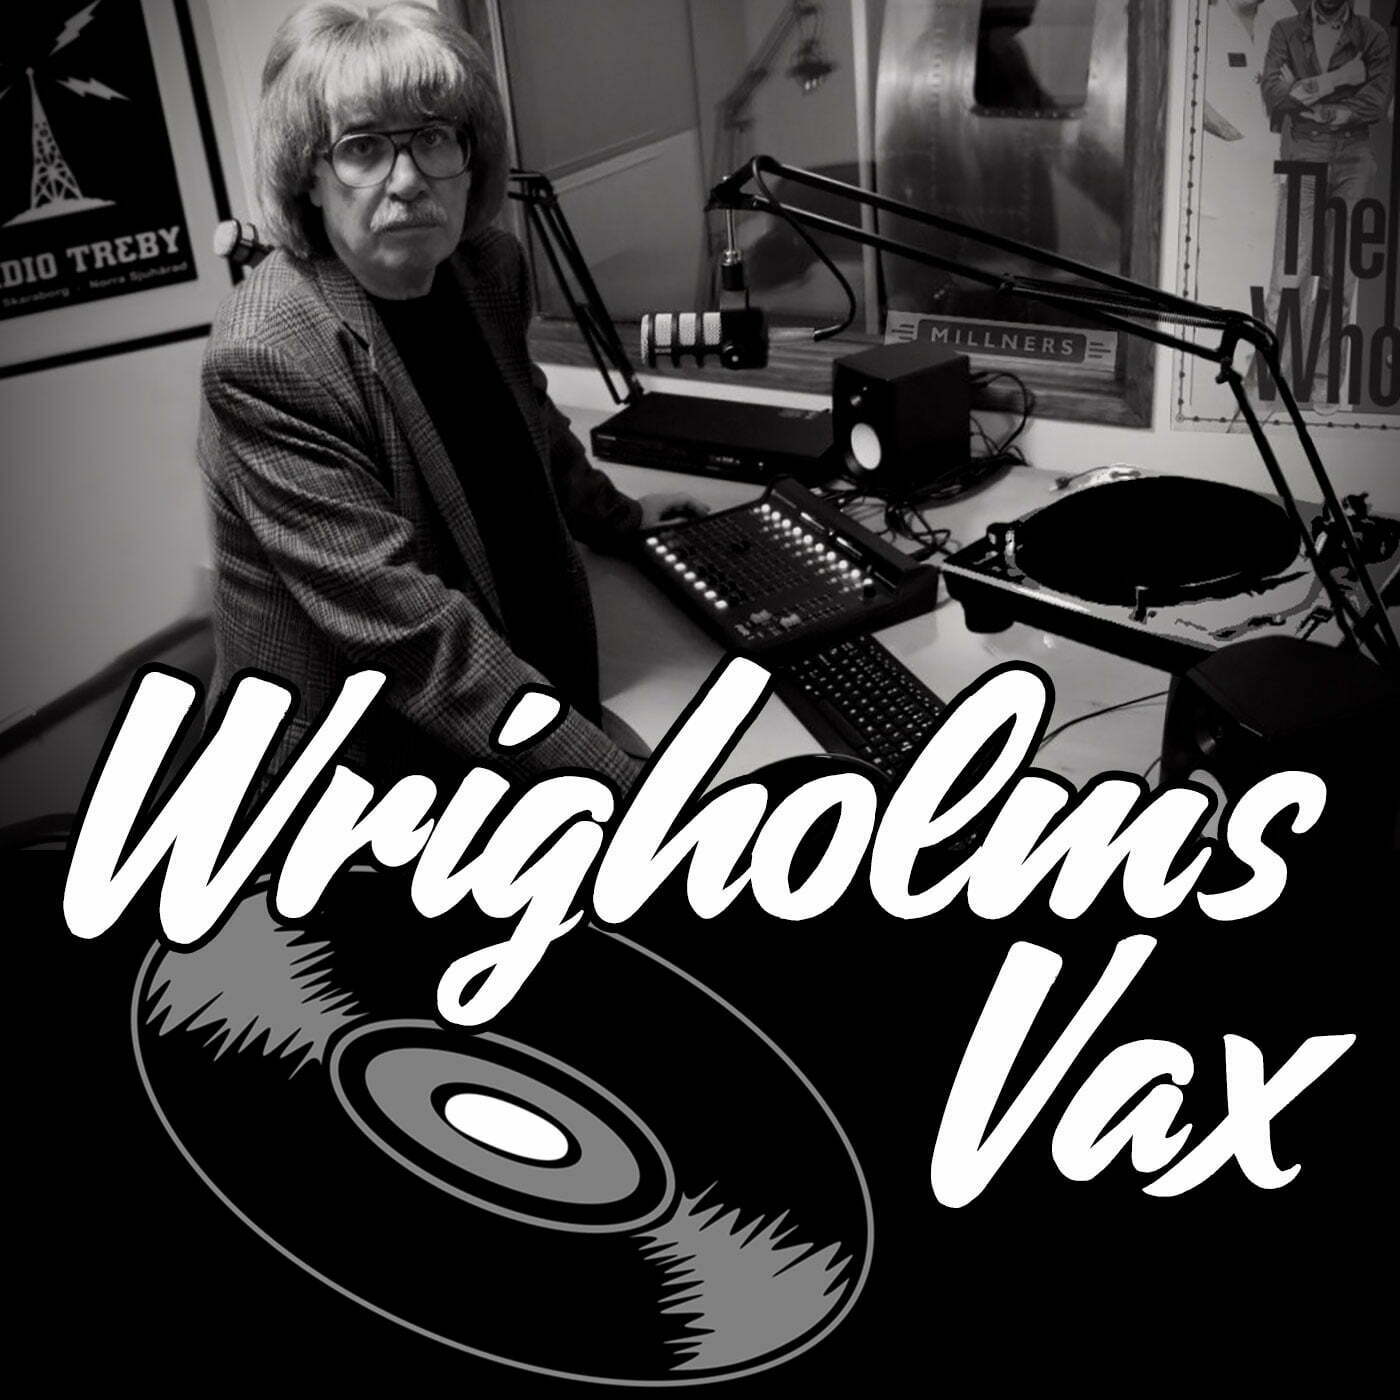 Lyssna på senaste Wrigholms Vax